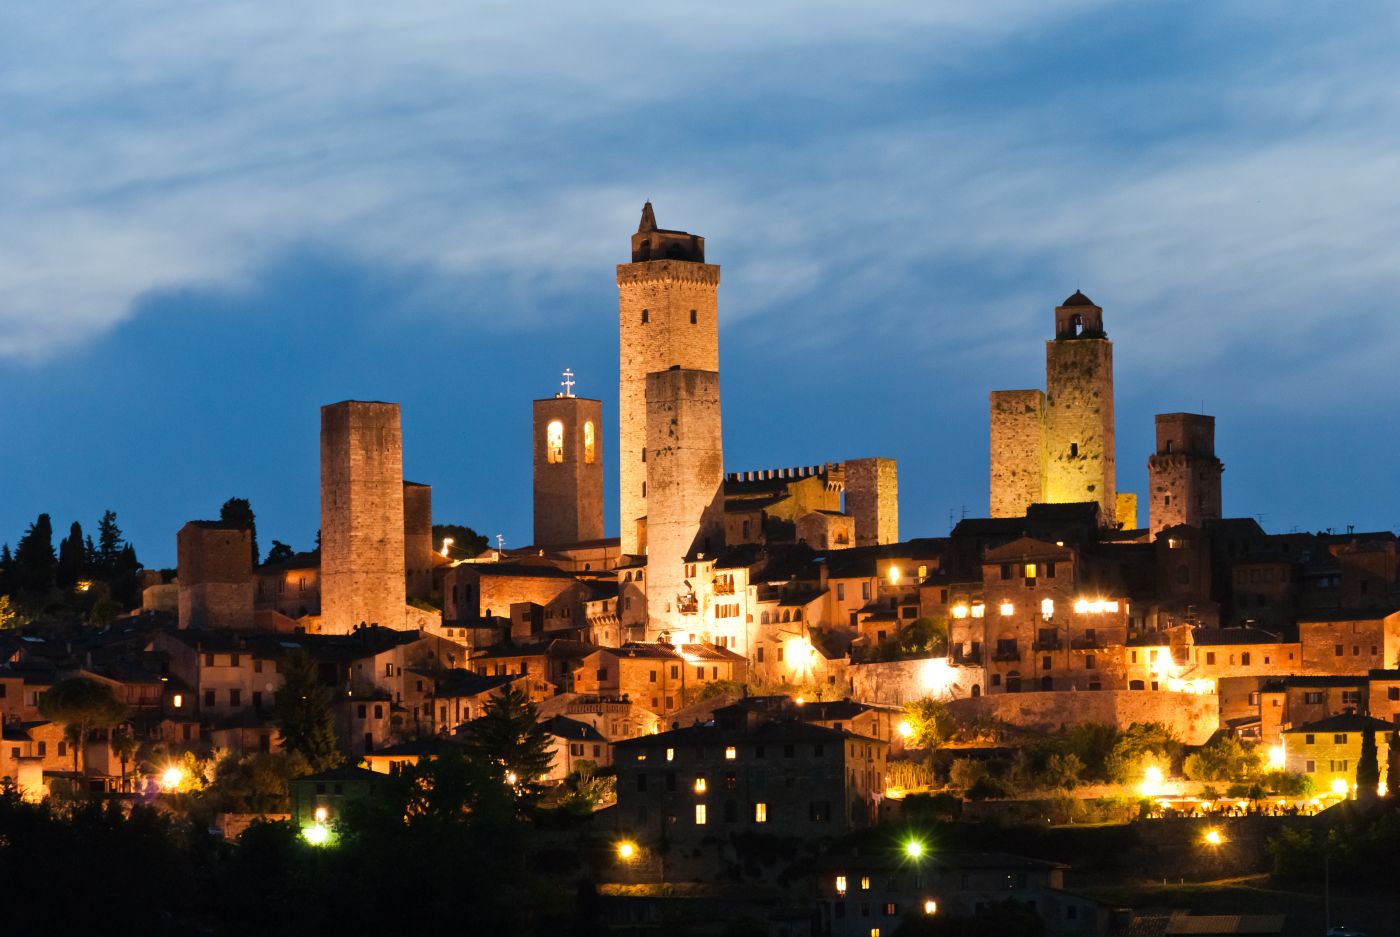 All’ombra delle torri. “Nottilucente” a San Gimignano, il 27 giugno musica e spettacoli dal tramonto all’alba